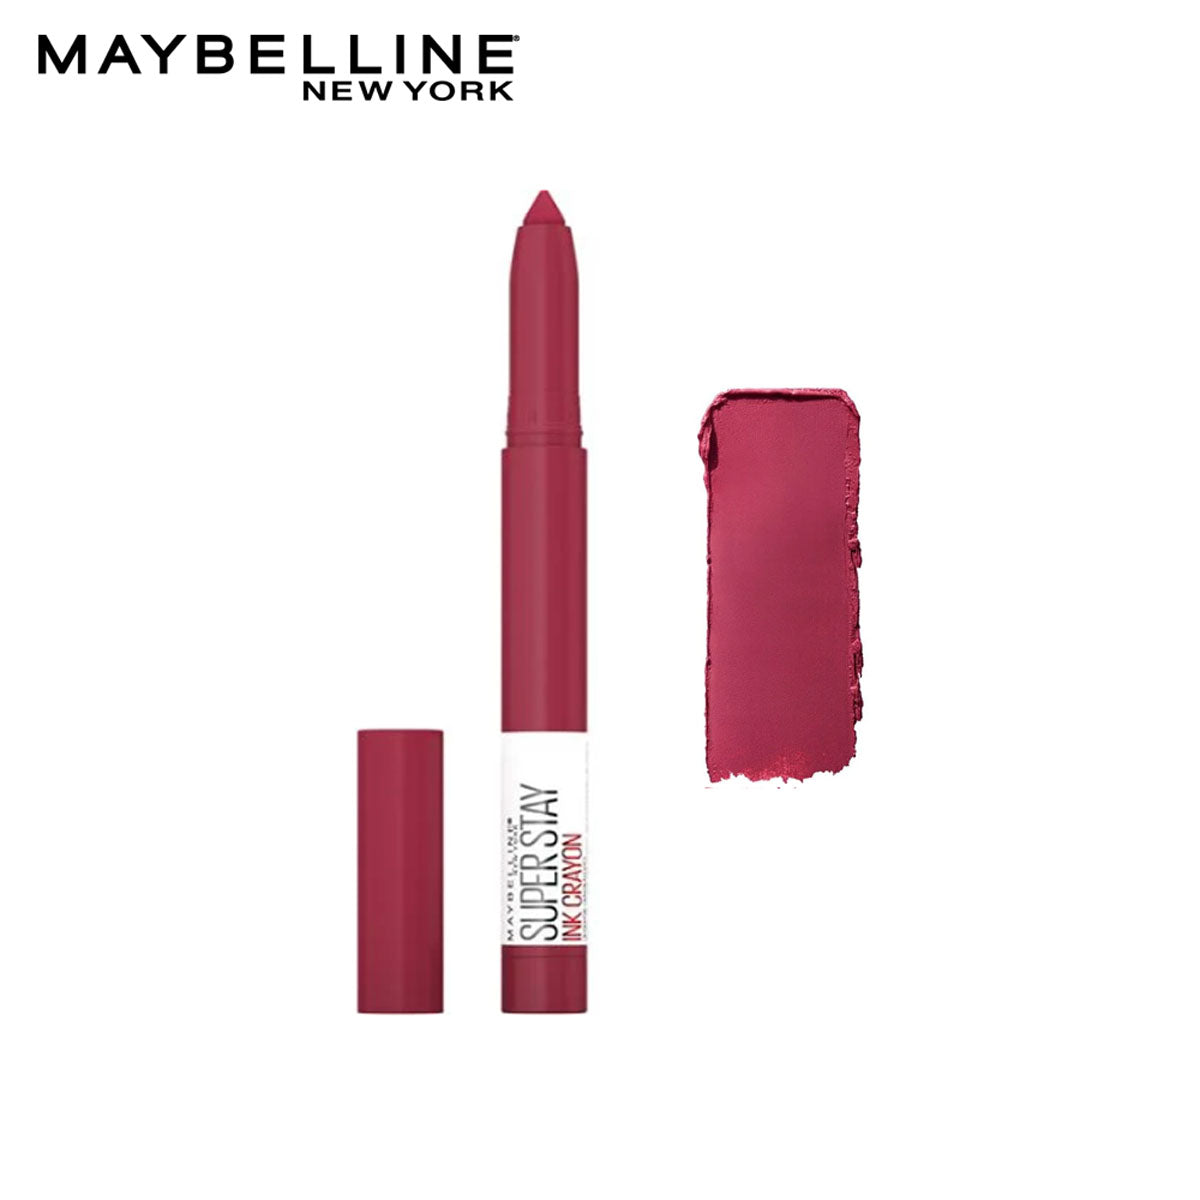 Maybelline - Superstay Ink Crayon Lipstick - 75 Speak your mind